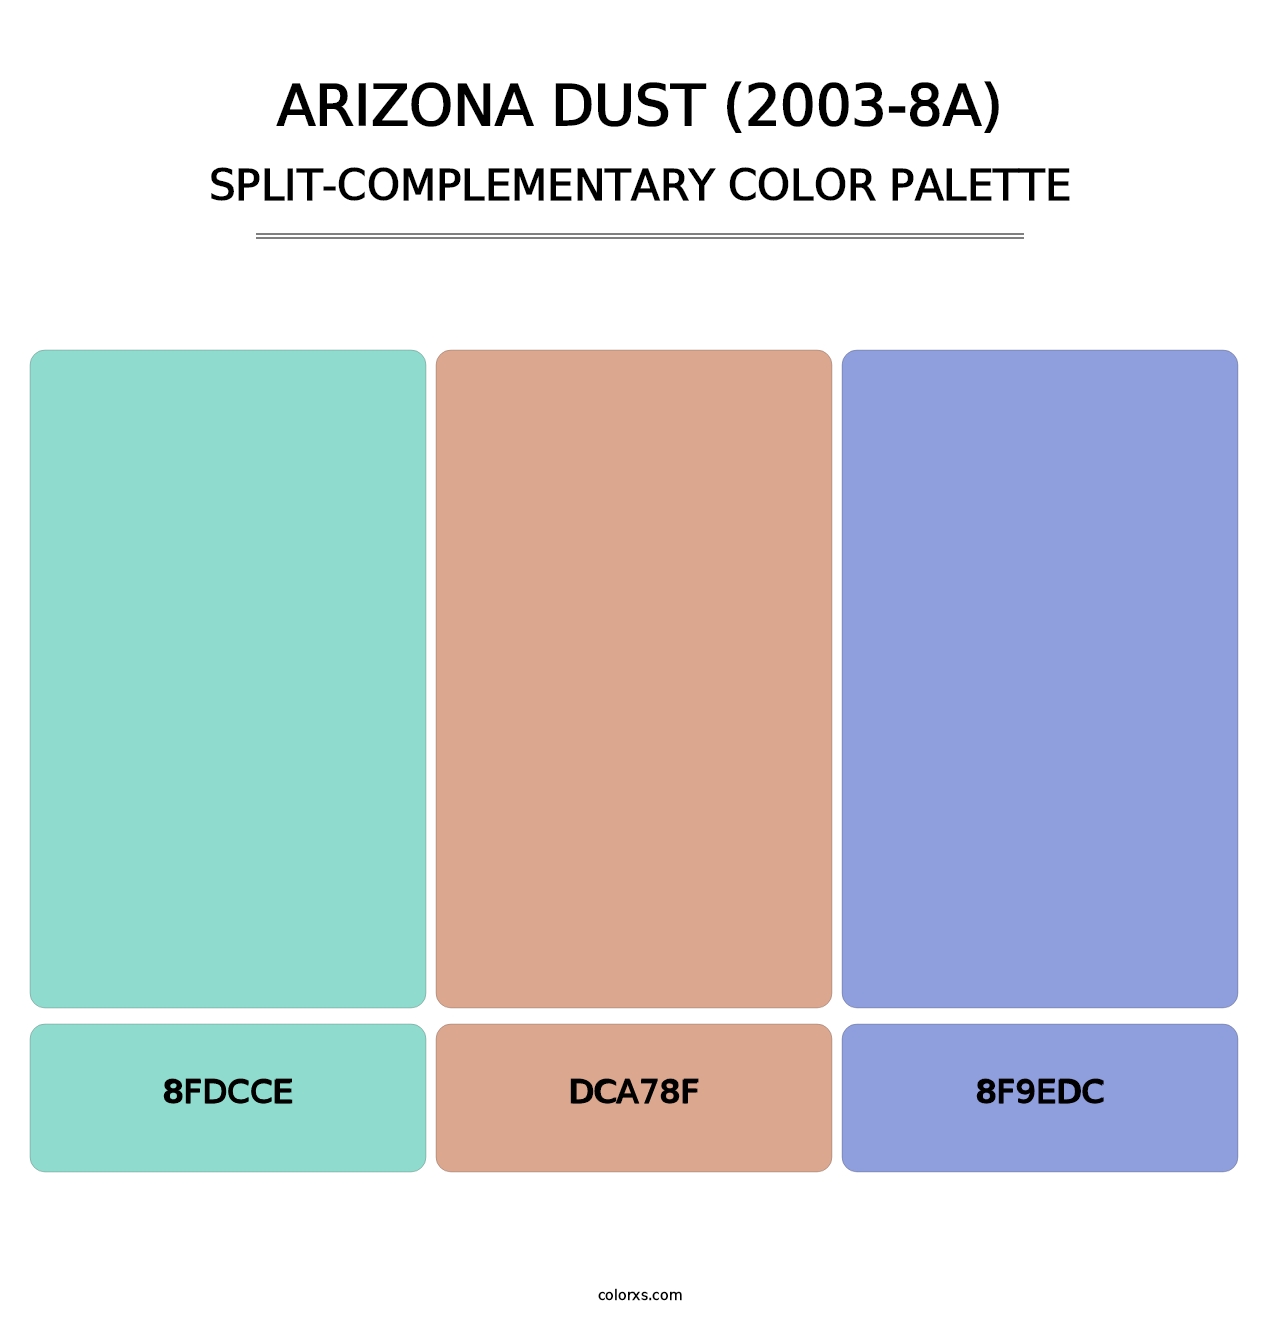 Arizona Dust (2003-8A) - Split-Complementary Color Palette